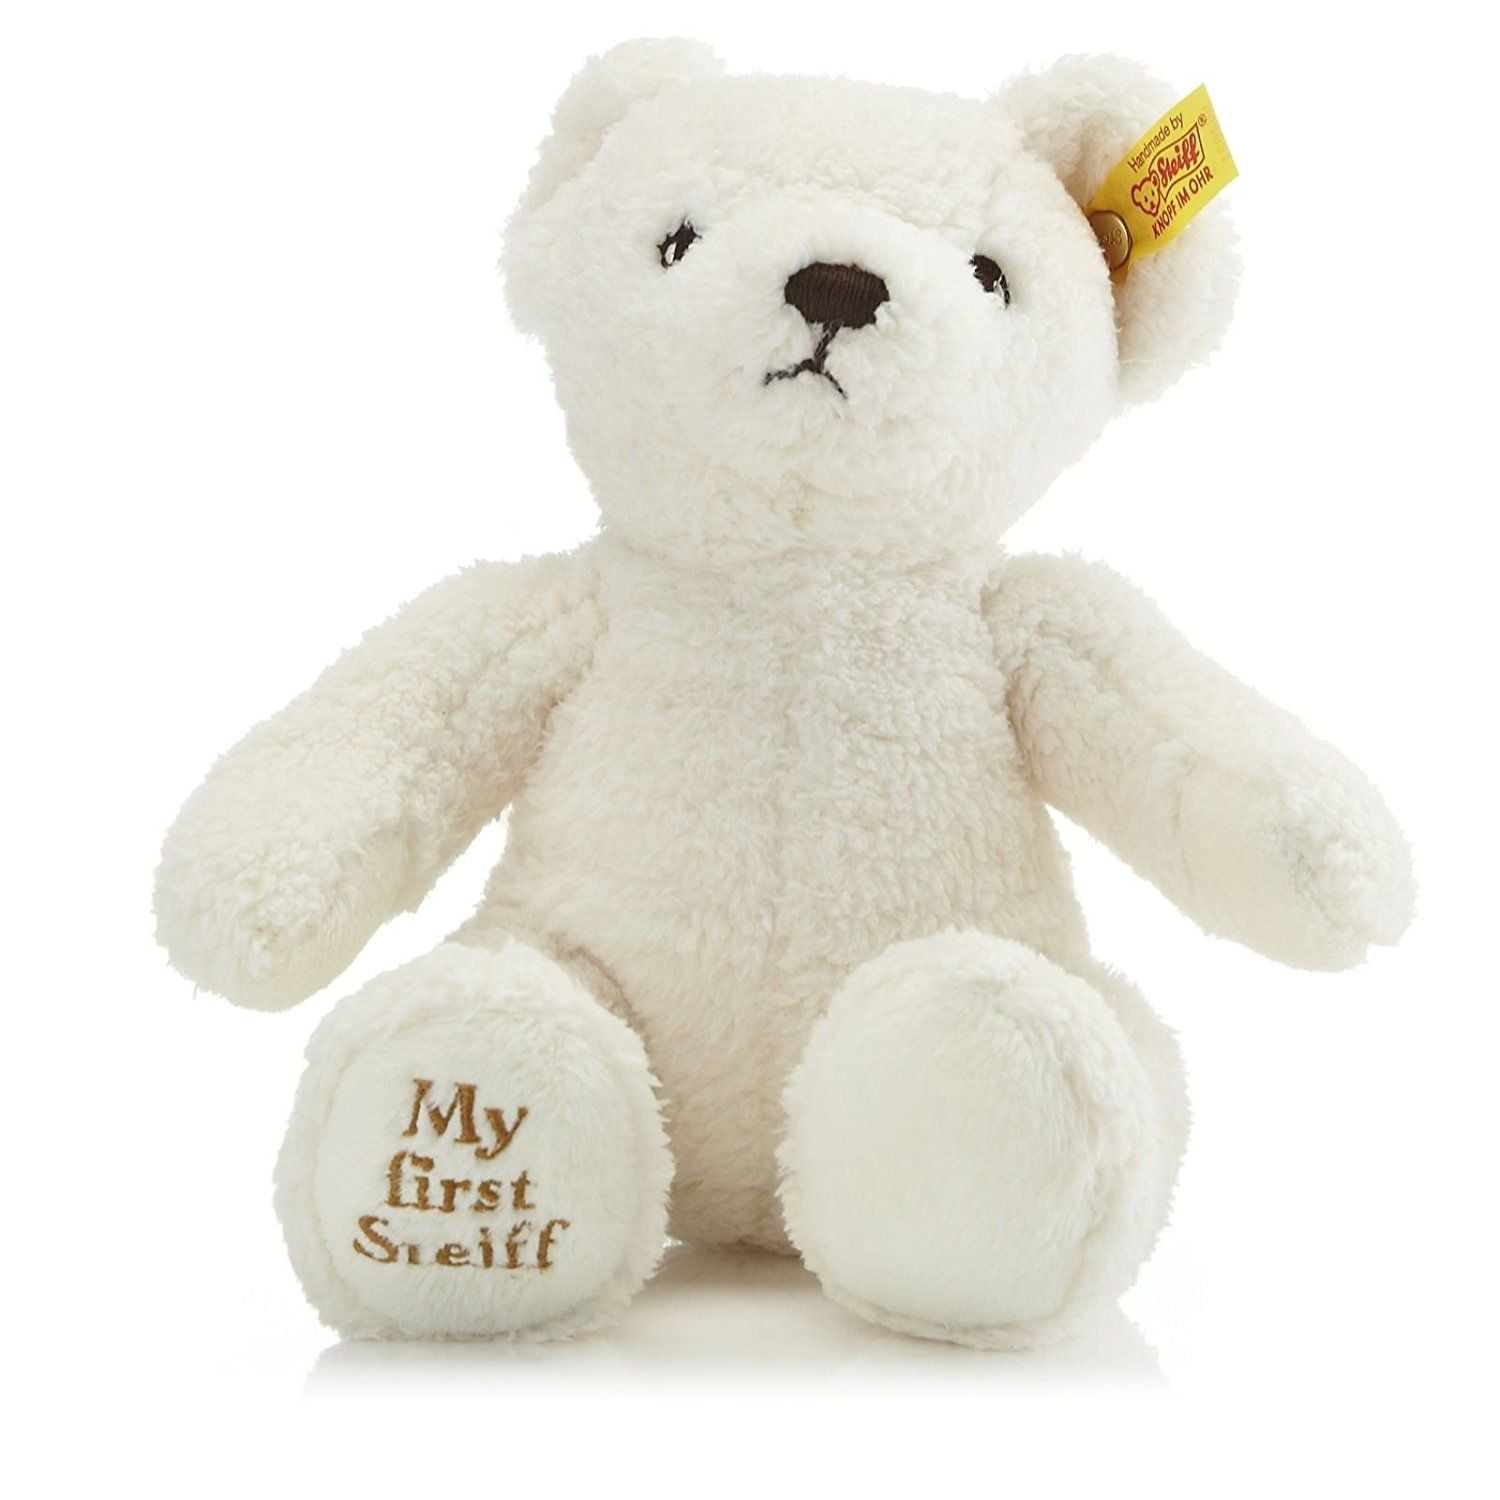 Gift Present Birthday Xmas Cute And Cuddly NEW DYLAN Teddy Bear 